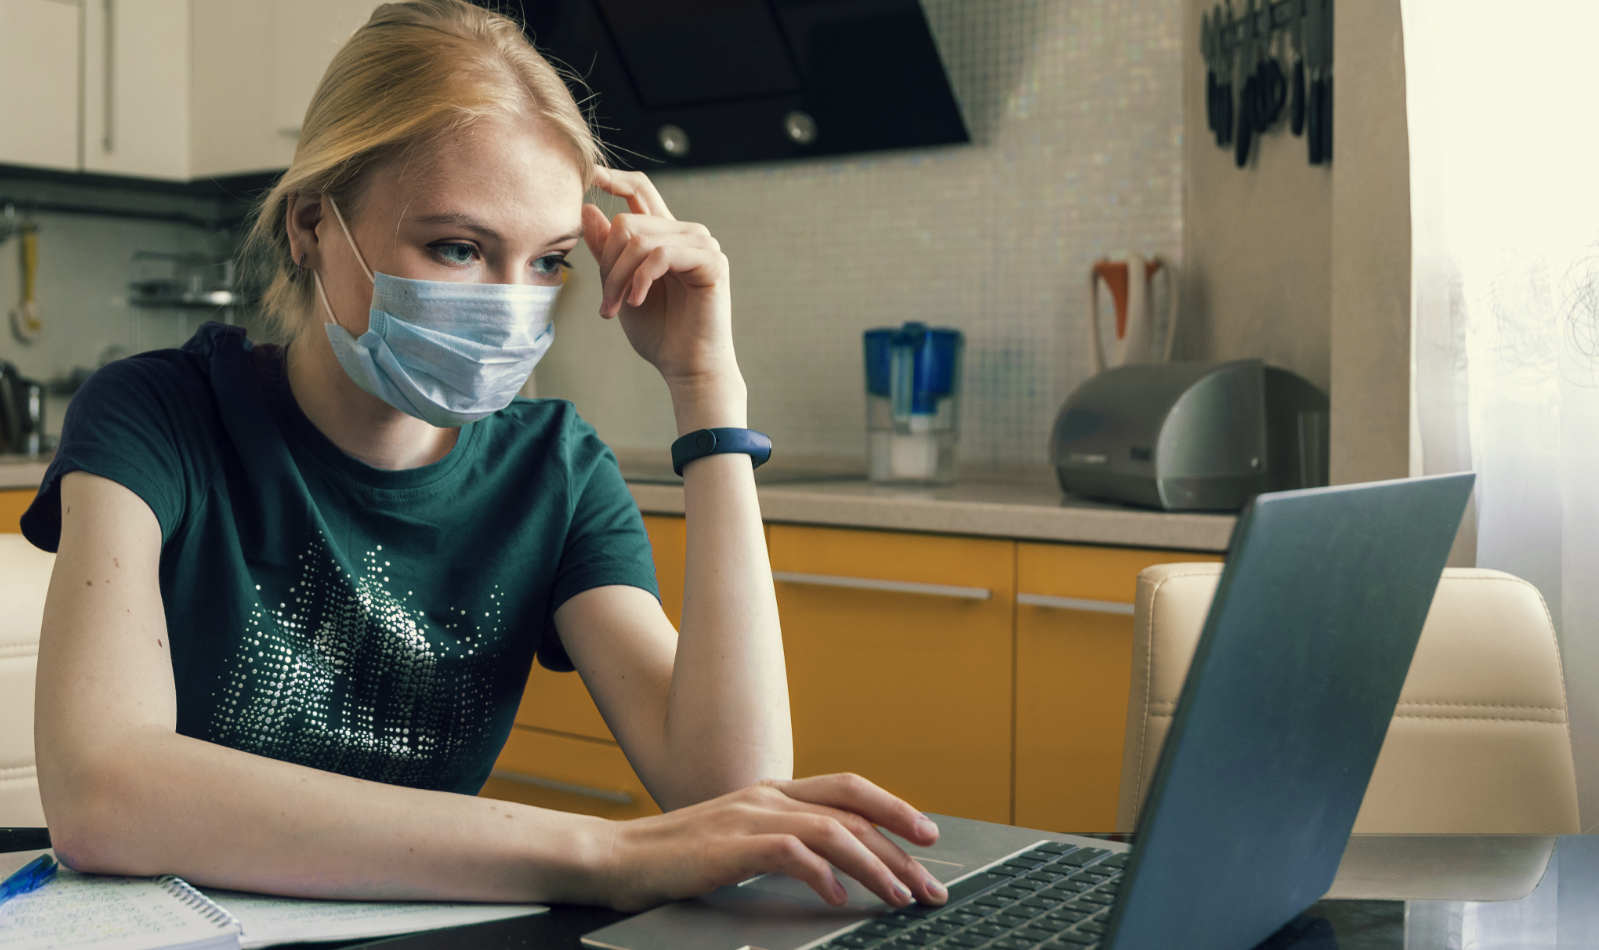 Studentin in der Küche mit medizinischer Maske am Laptop